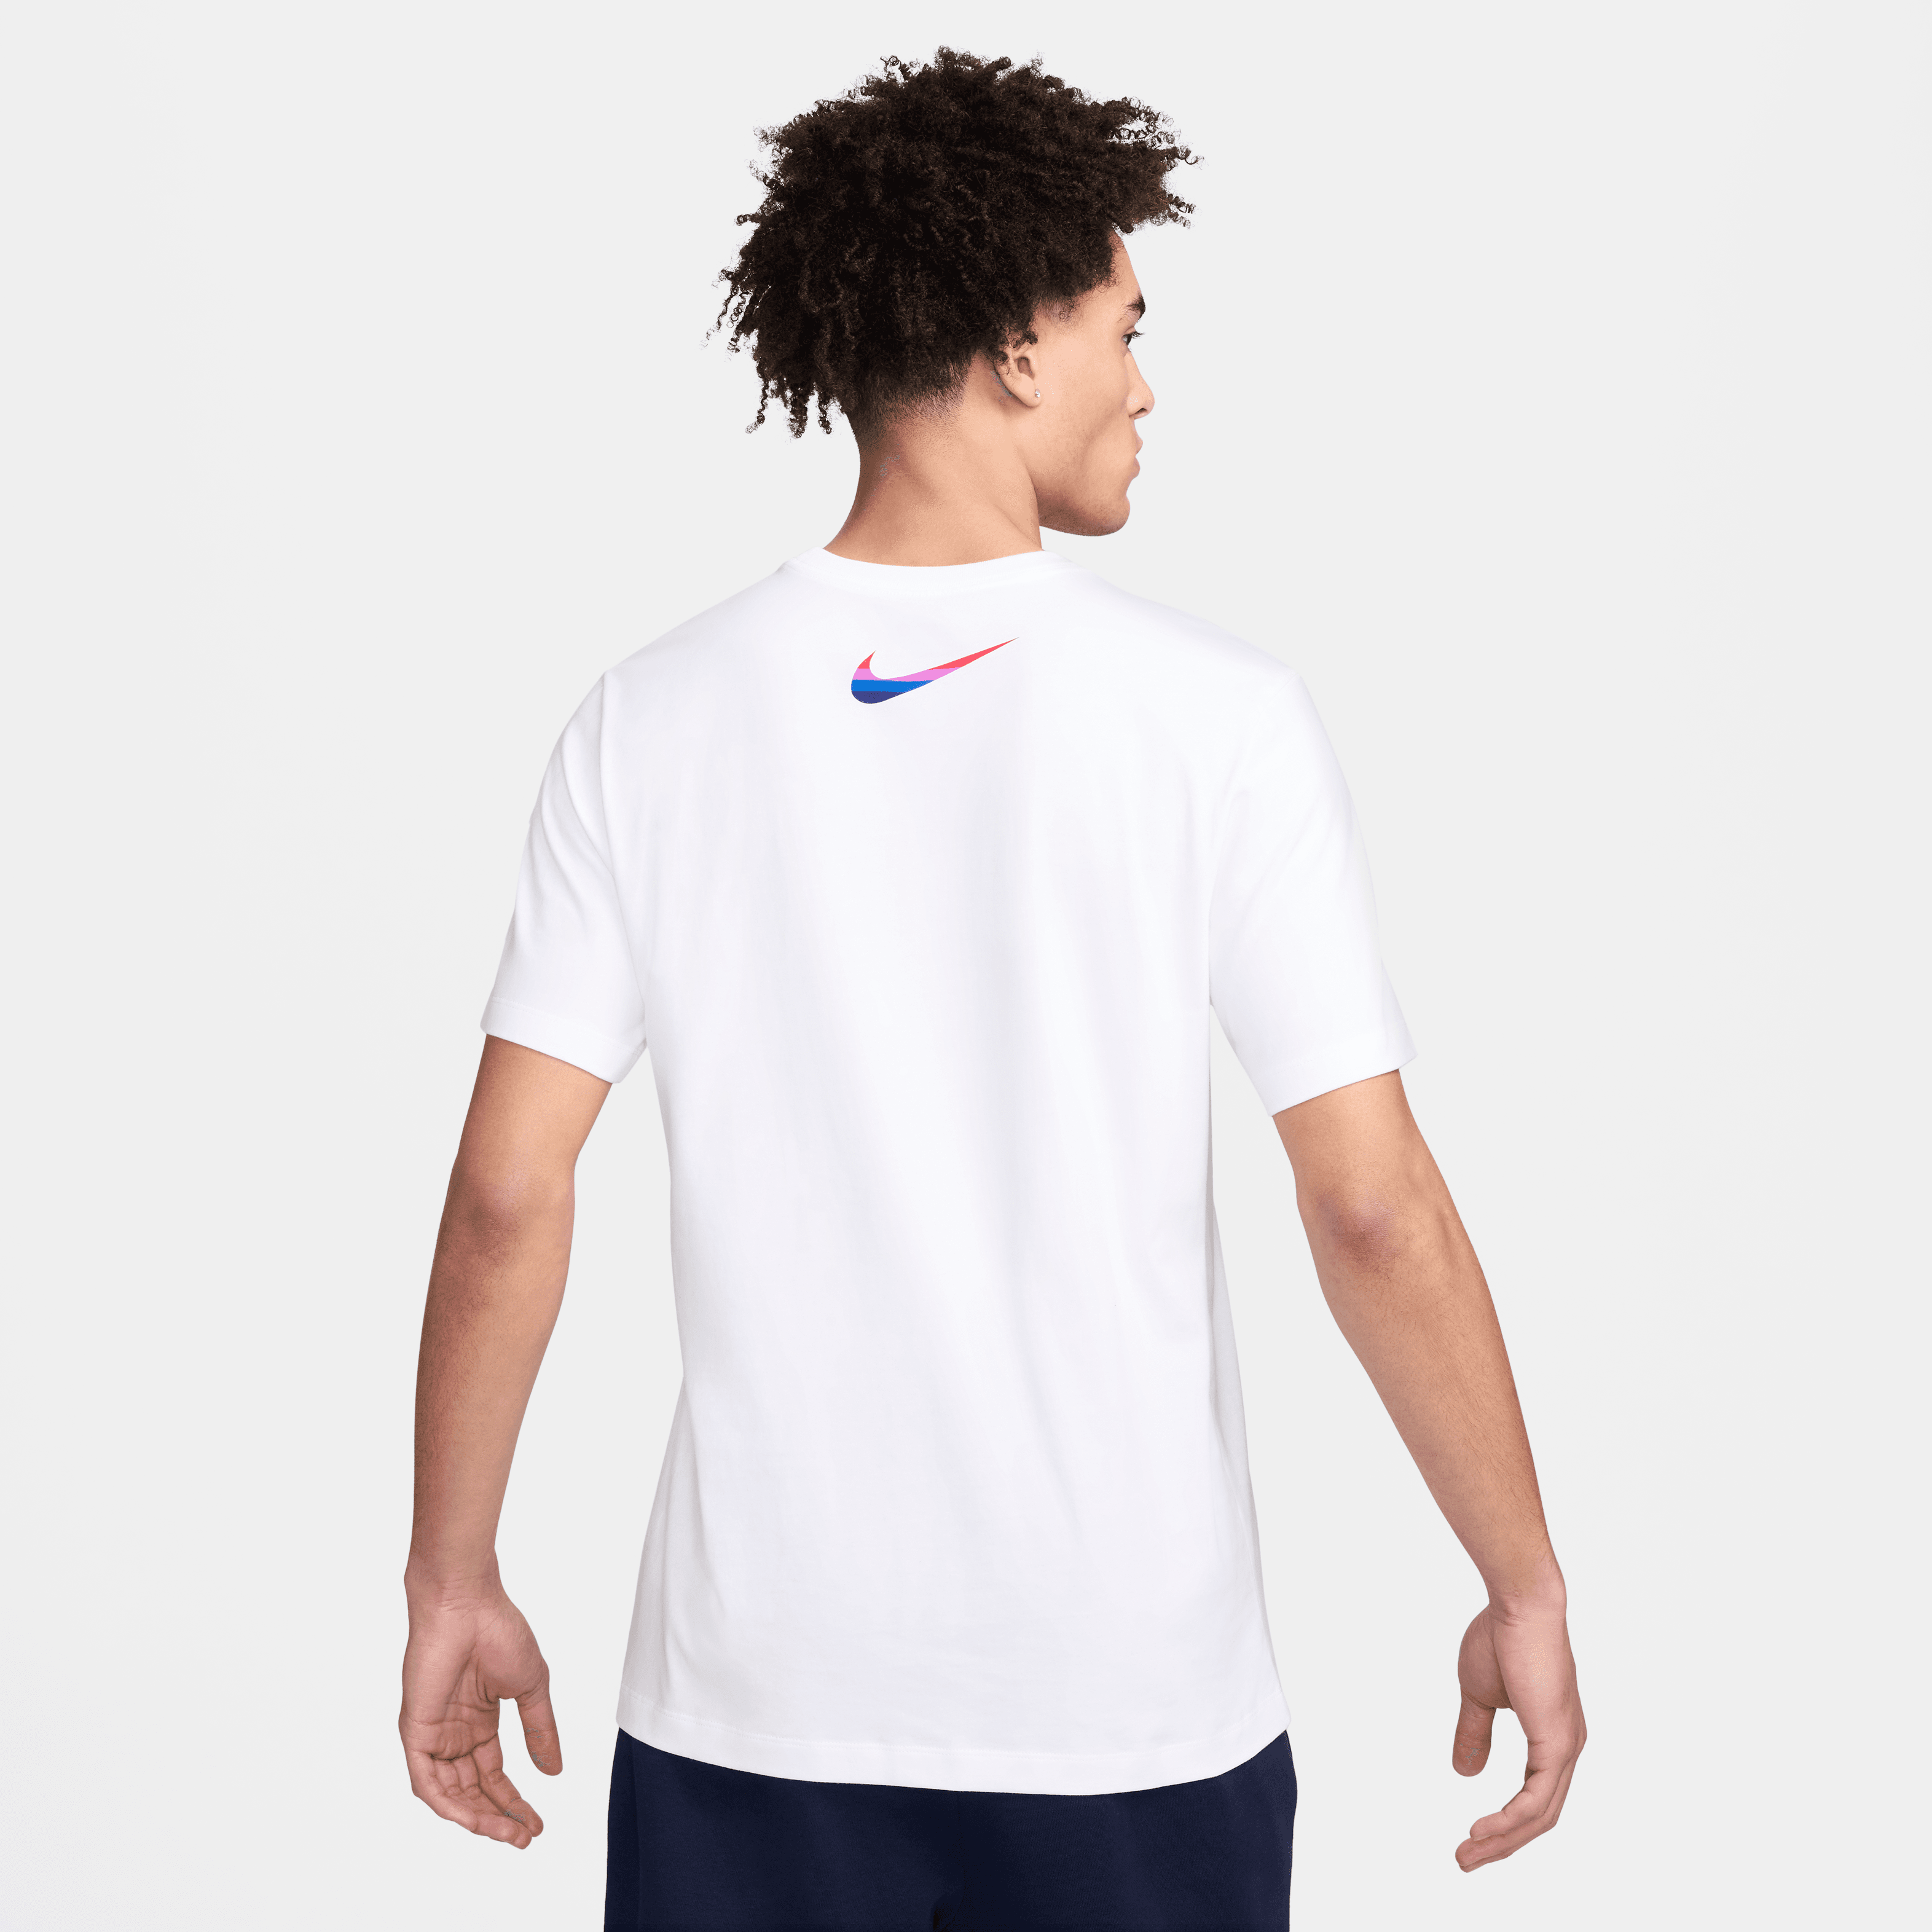 Nike Men's England T-Shirt